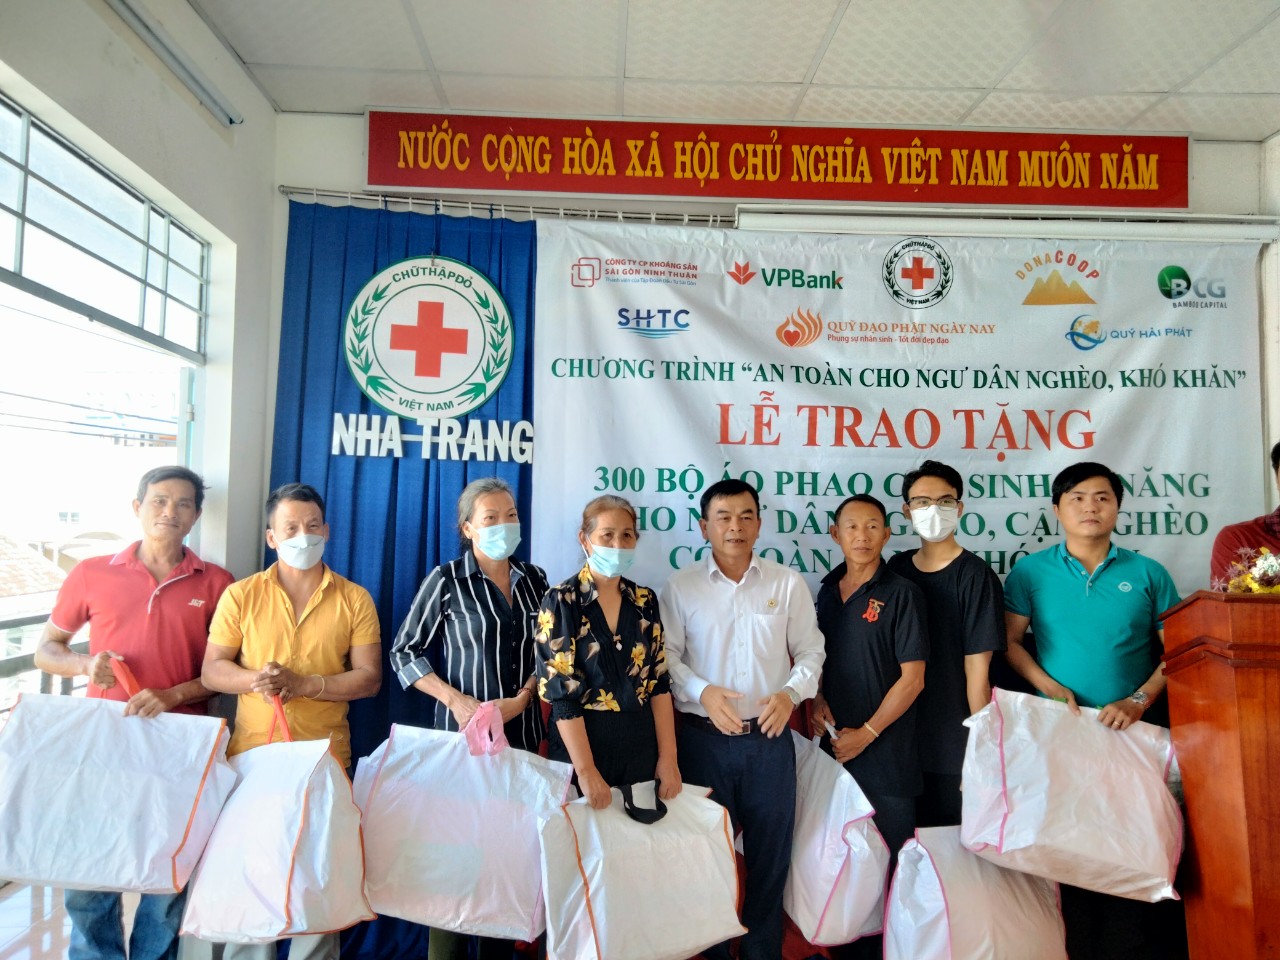 Trao tặng 300 áo phao cứu sinh cho hộ ngư dân nghèo tại Nha Trang